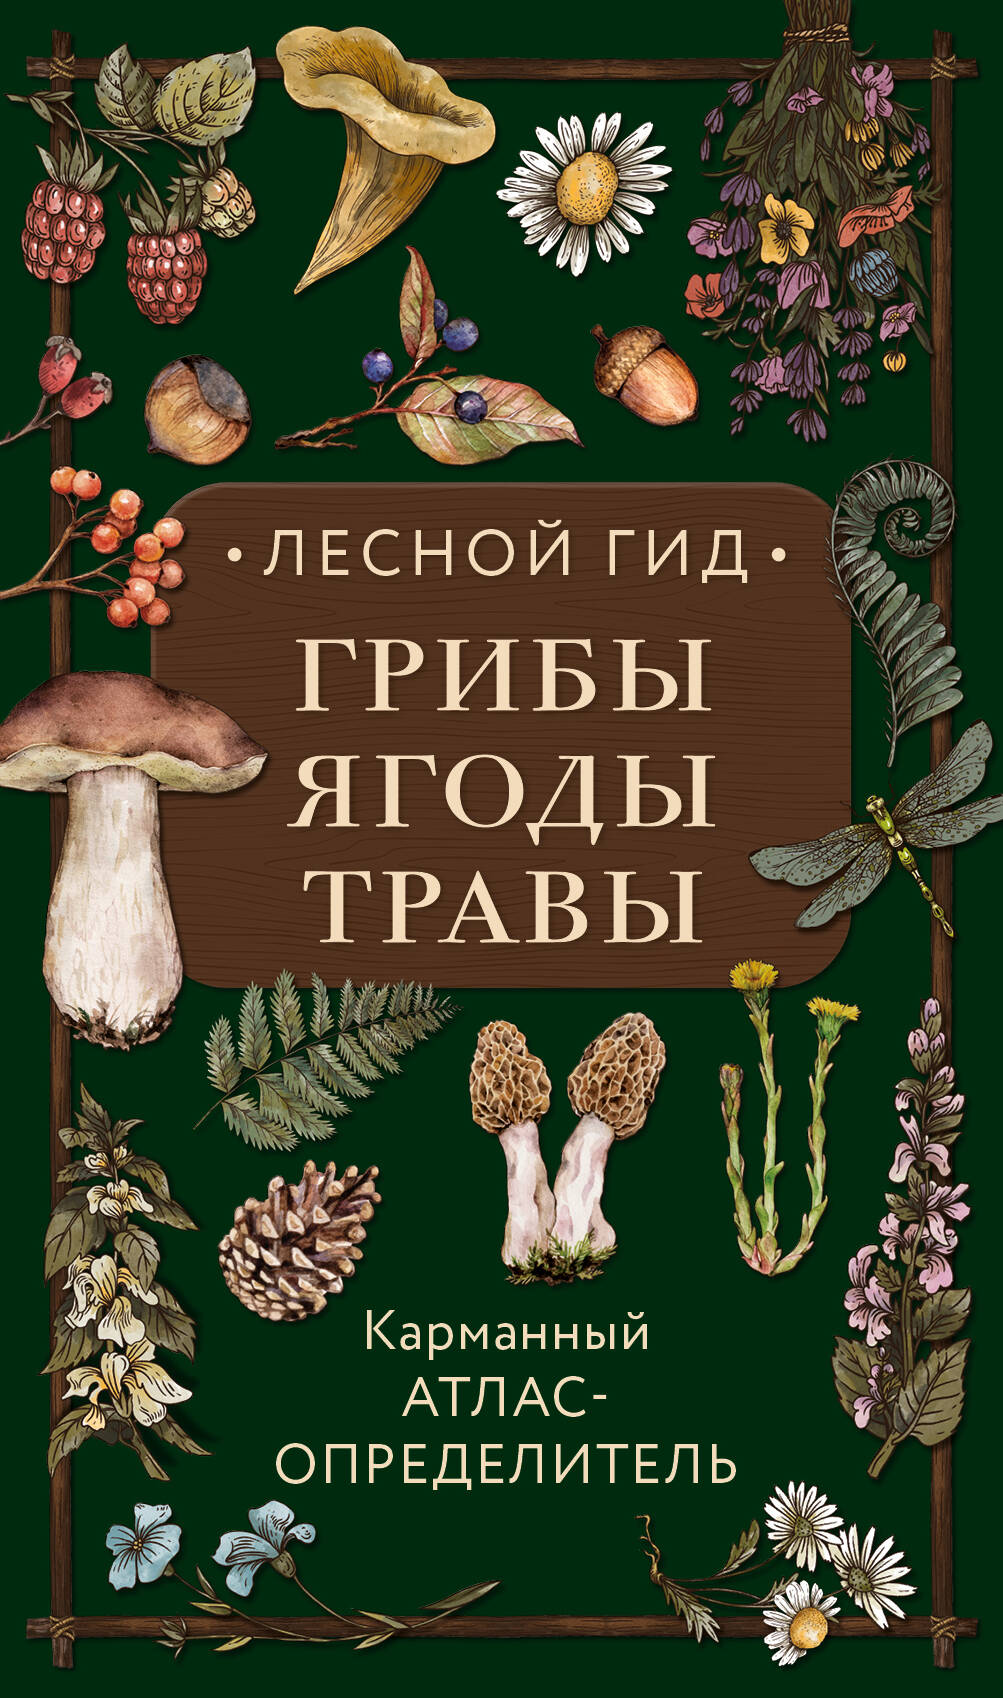 Семенова Людмила Семеновна - Лесной гид: грибы, ягоды, травы. Карманный атлас-определитель